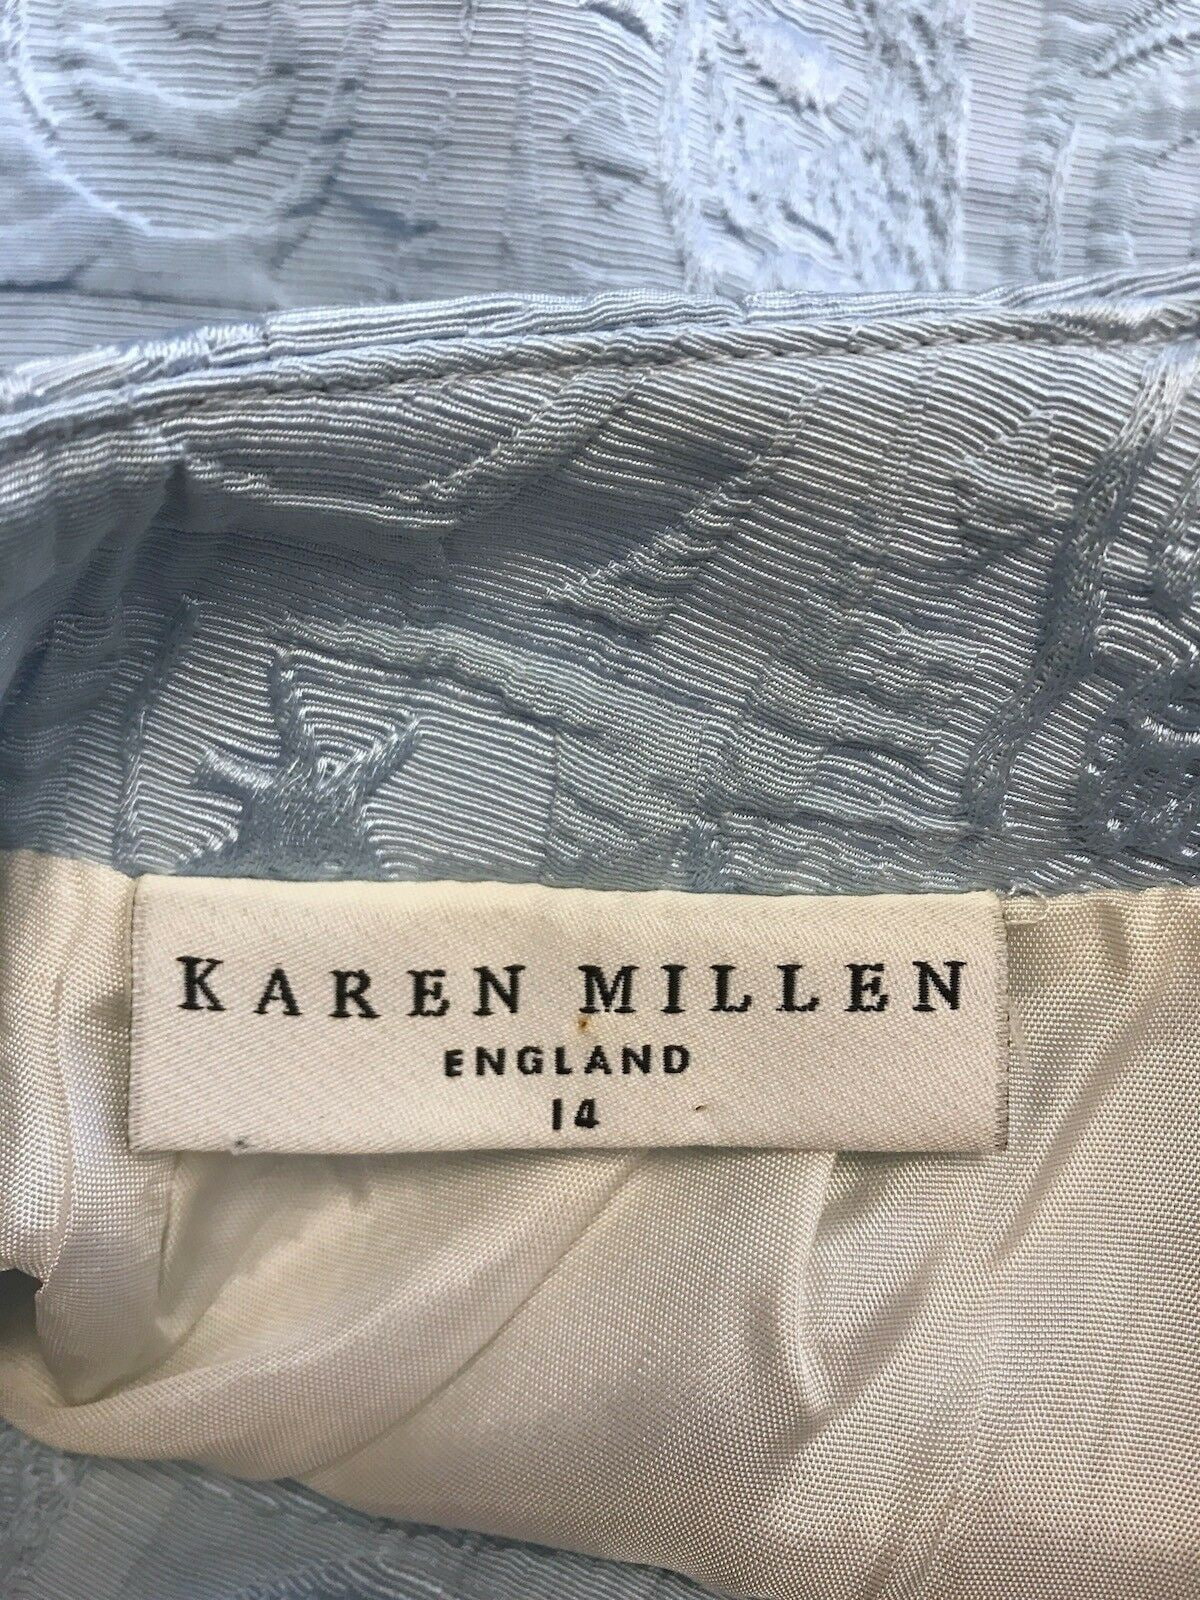 Karen Millen Vintage Light Blue Mini Pencil Skirt 29" waist UK 14 US 10 EU 42 Timeless Fashions